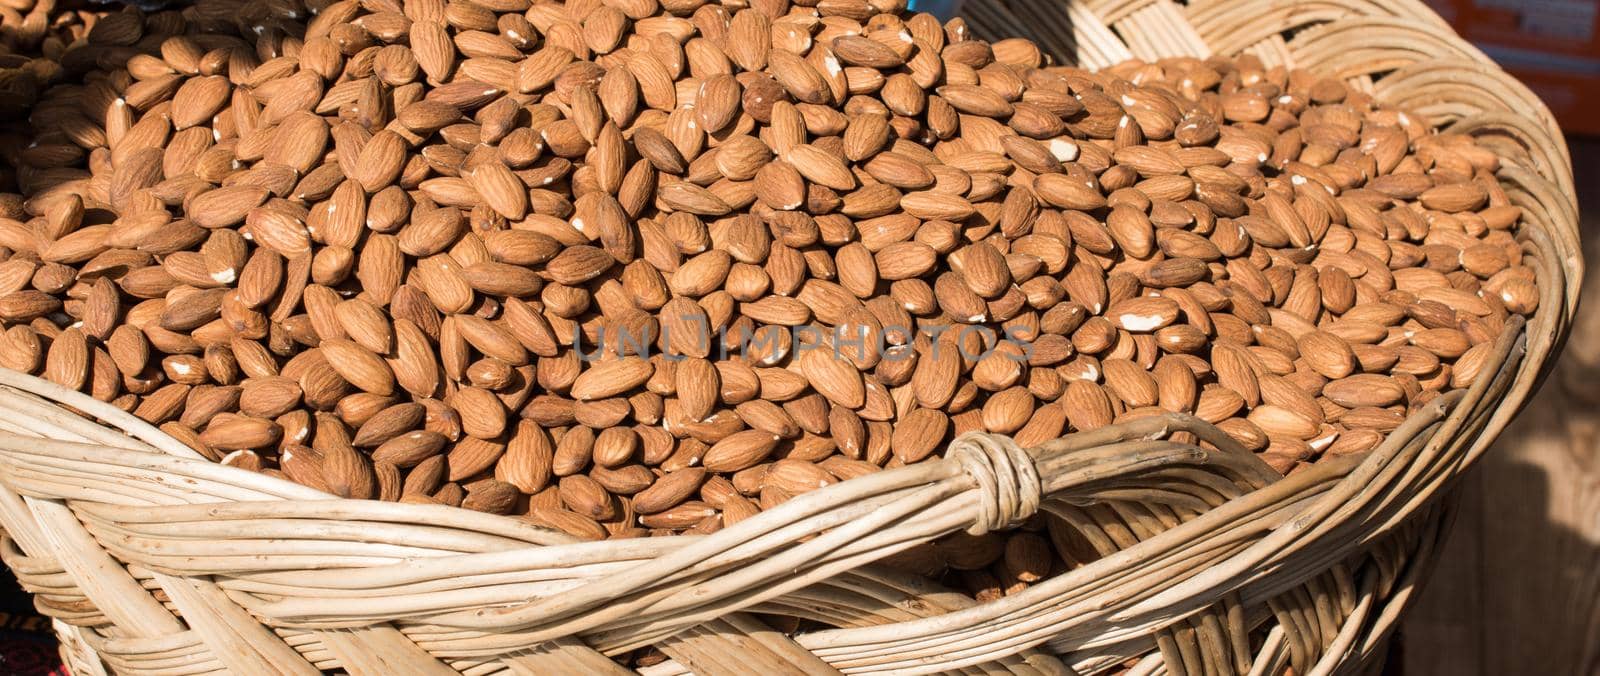  Shot Of Almonds For Sale In Market by berkay